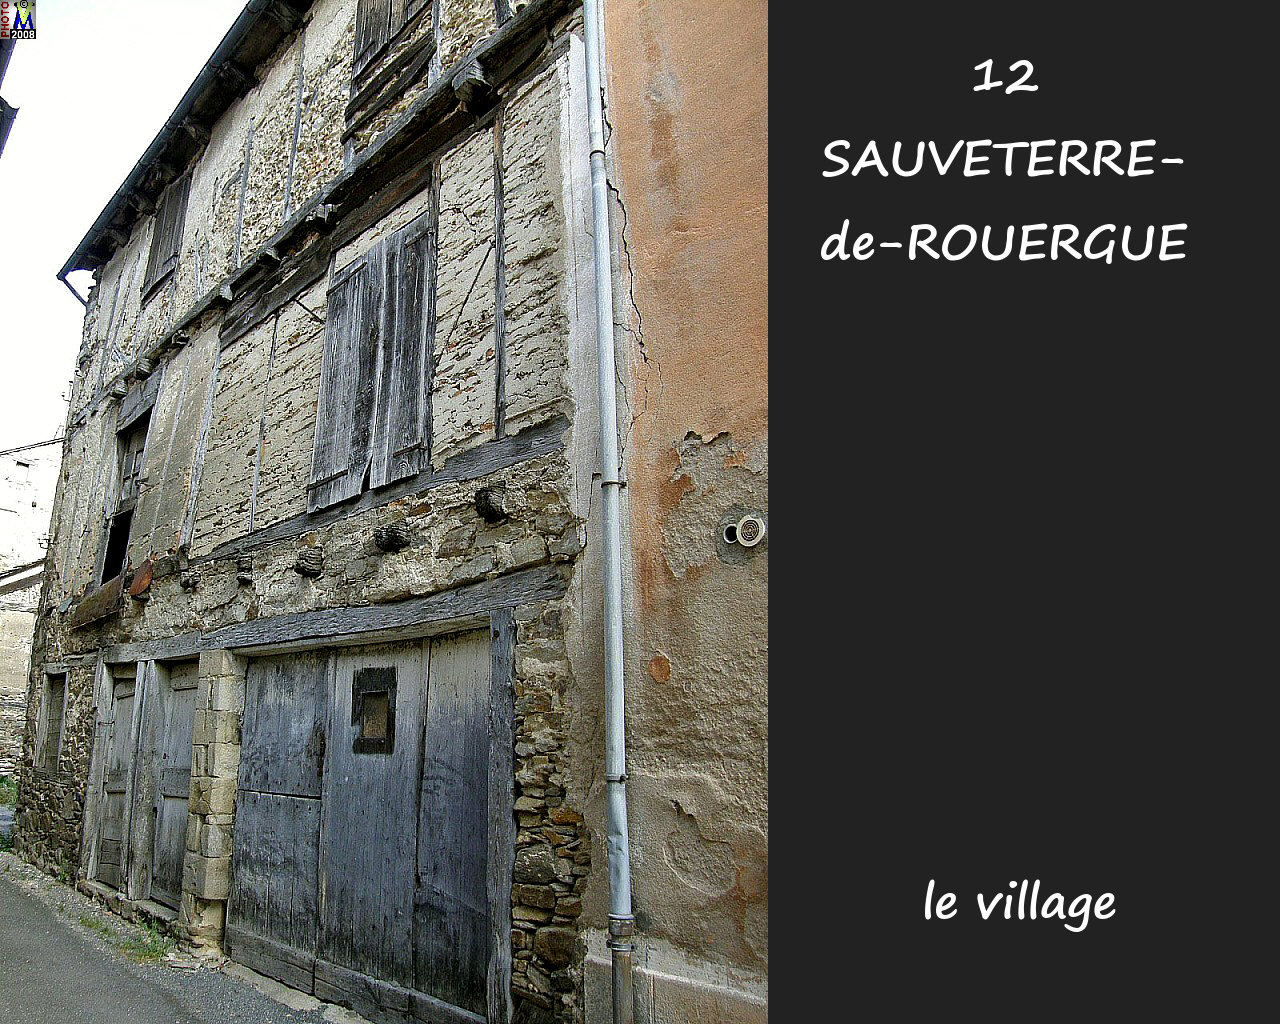 12SAUVETERRE-ROUERGUE_village_124.jpg